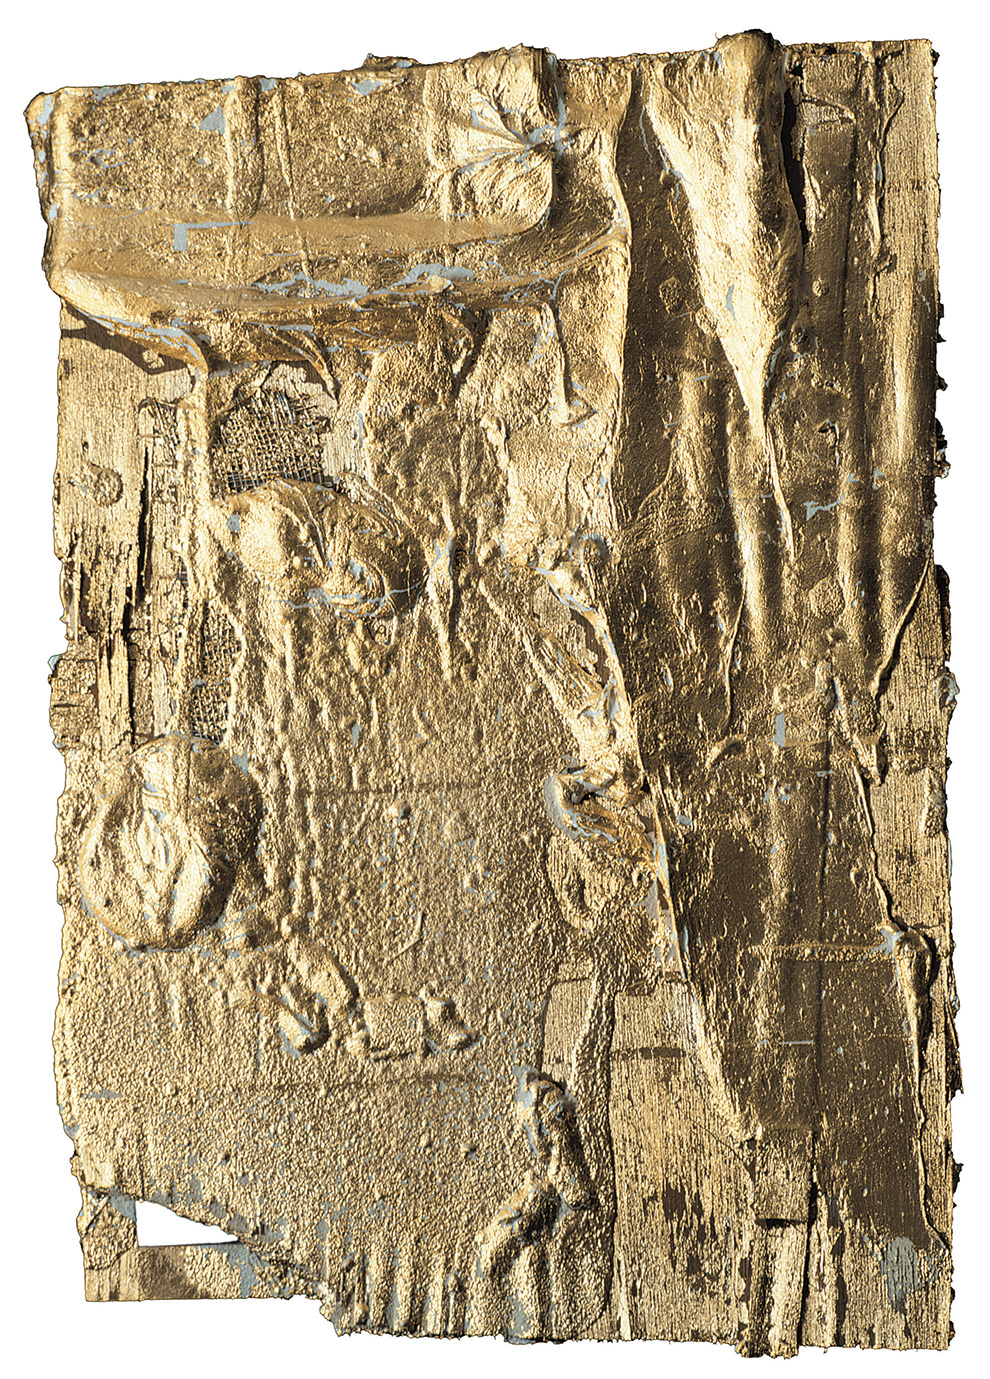 《古裂—金》--55x40x6cm--木质构造、麻纸、矿物·植物·土质颜料、箔--2002年.jpg